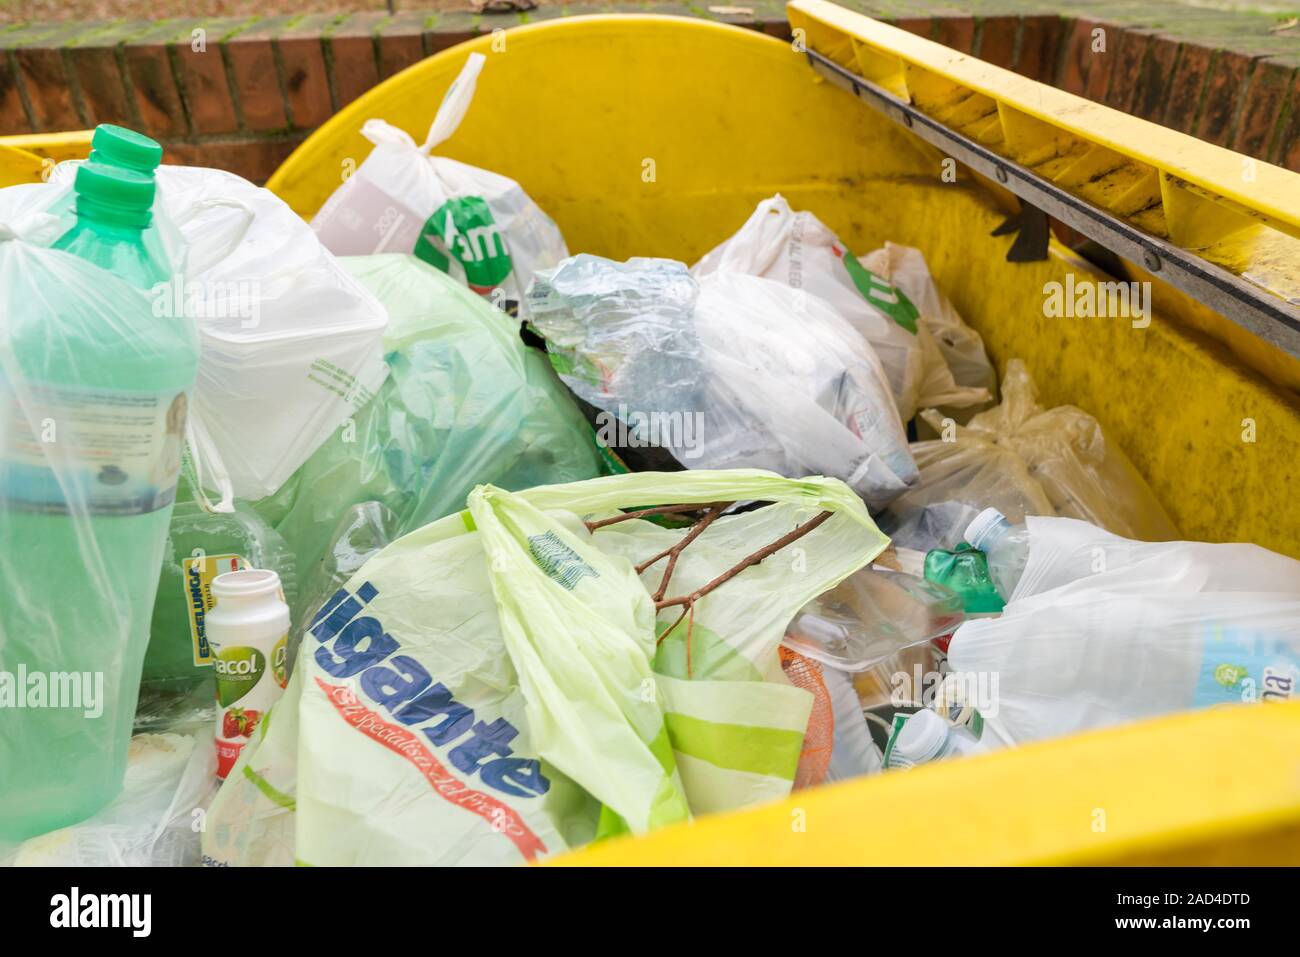 Milan, Italie - 02 décembre 2019 : la collecte sélective des déchets, les bacs à ordures big yellow en plastique plein d'ordures Banque D'Images